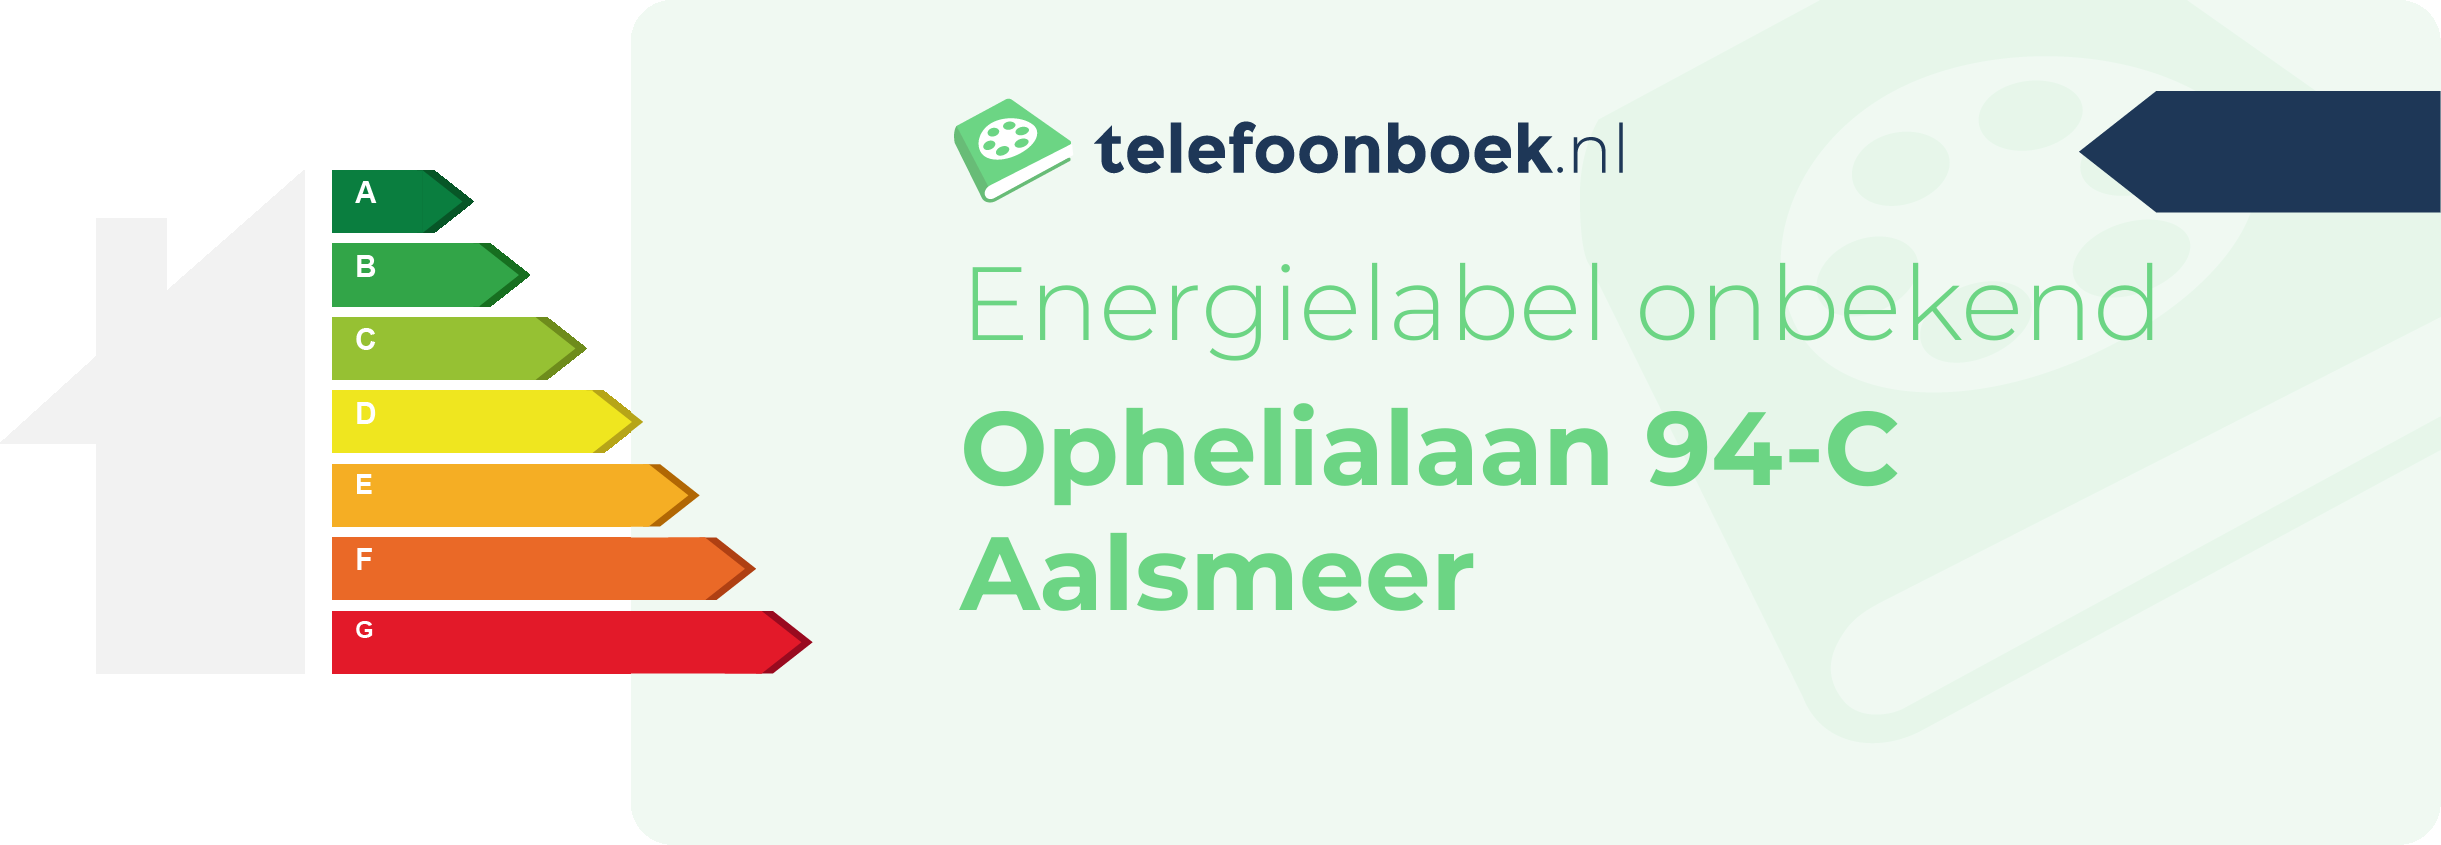 Energielabel Ophelialaan 94-C Aalsmeer